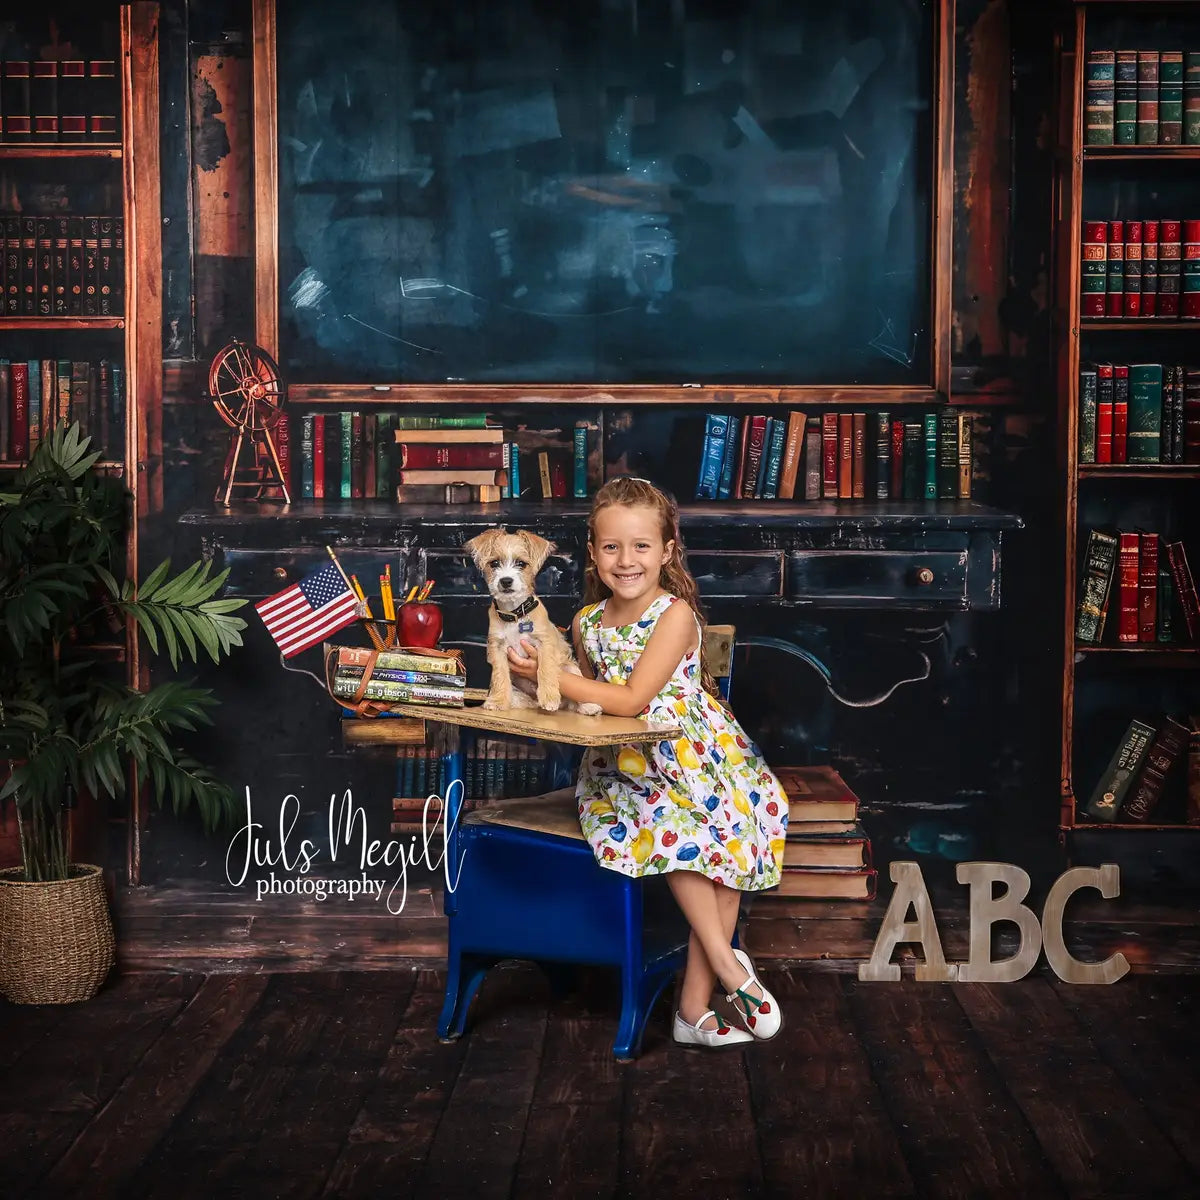 Kate Brown Back to school Blackboard Book Desk Apple Backdrop Designed by Emetselch